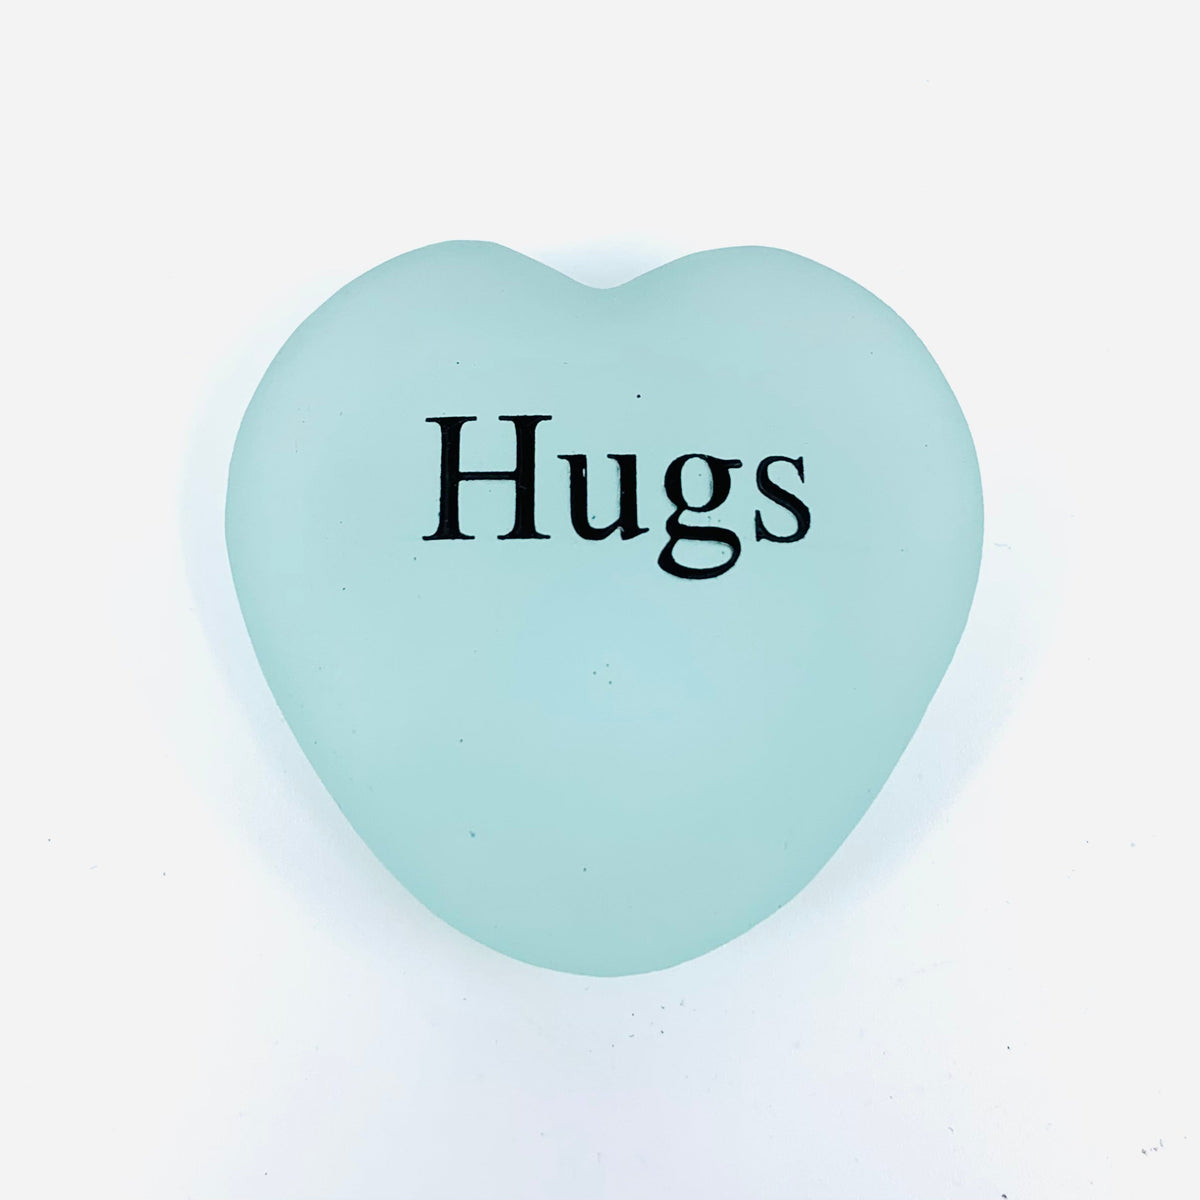 Heart Shaped Garden Stone Luke Adams Glass Blowing Studio Hugs 